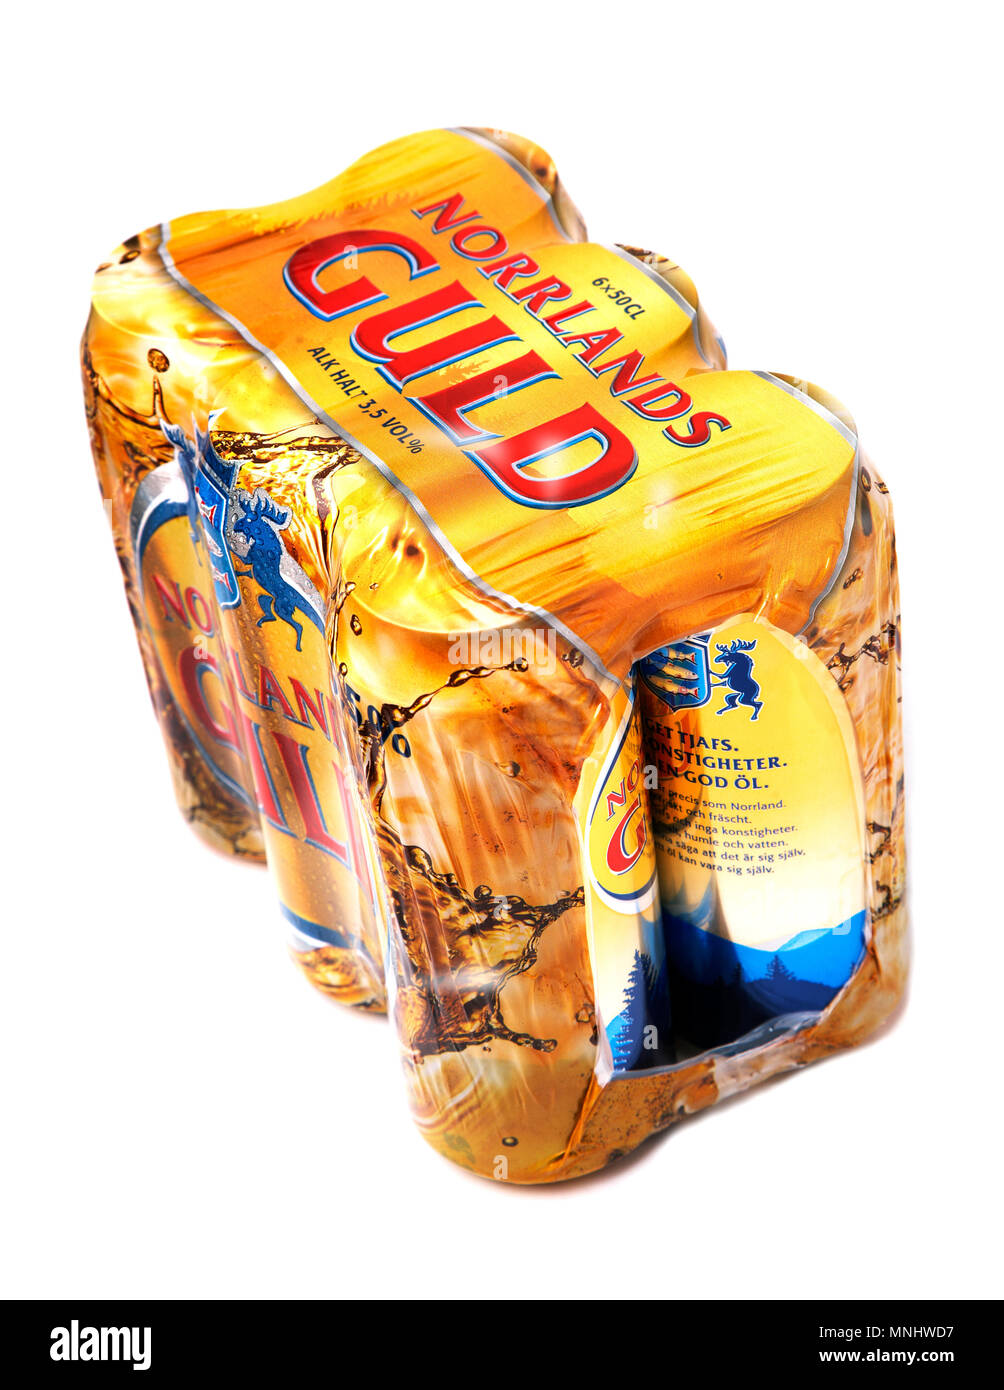 Eine laminierte Six-pack von Norrland gold Bier (3,5% Alkohol) von spendrups Brauereien in Schweden. Stockfoto